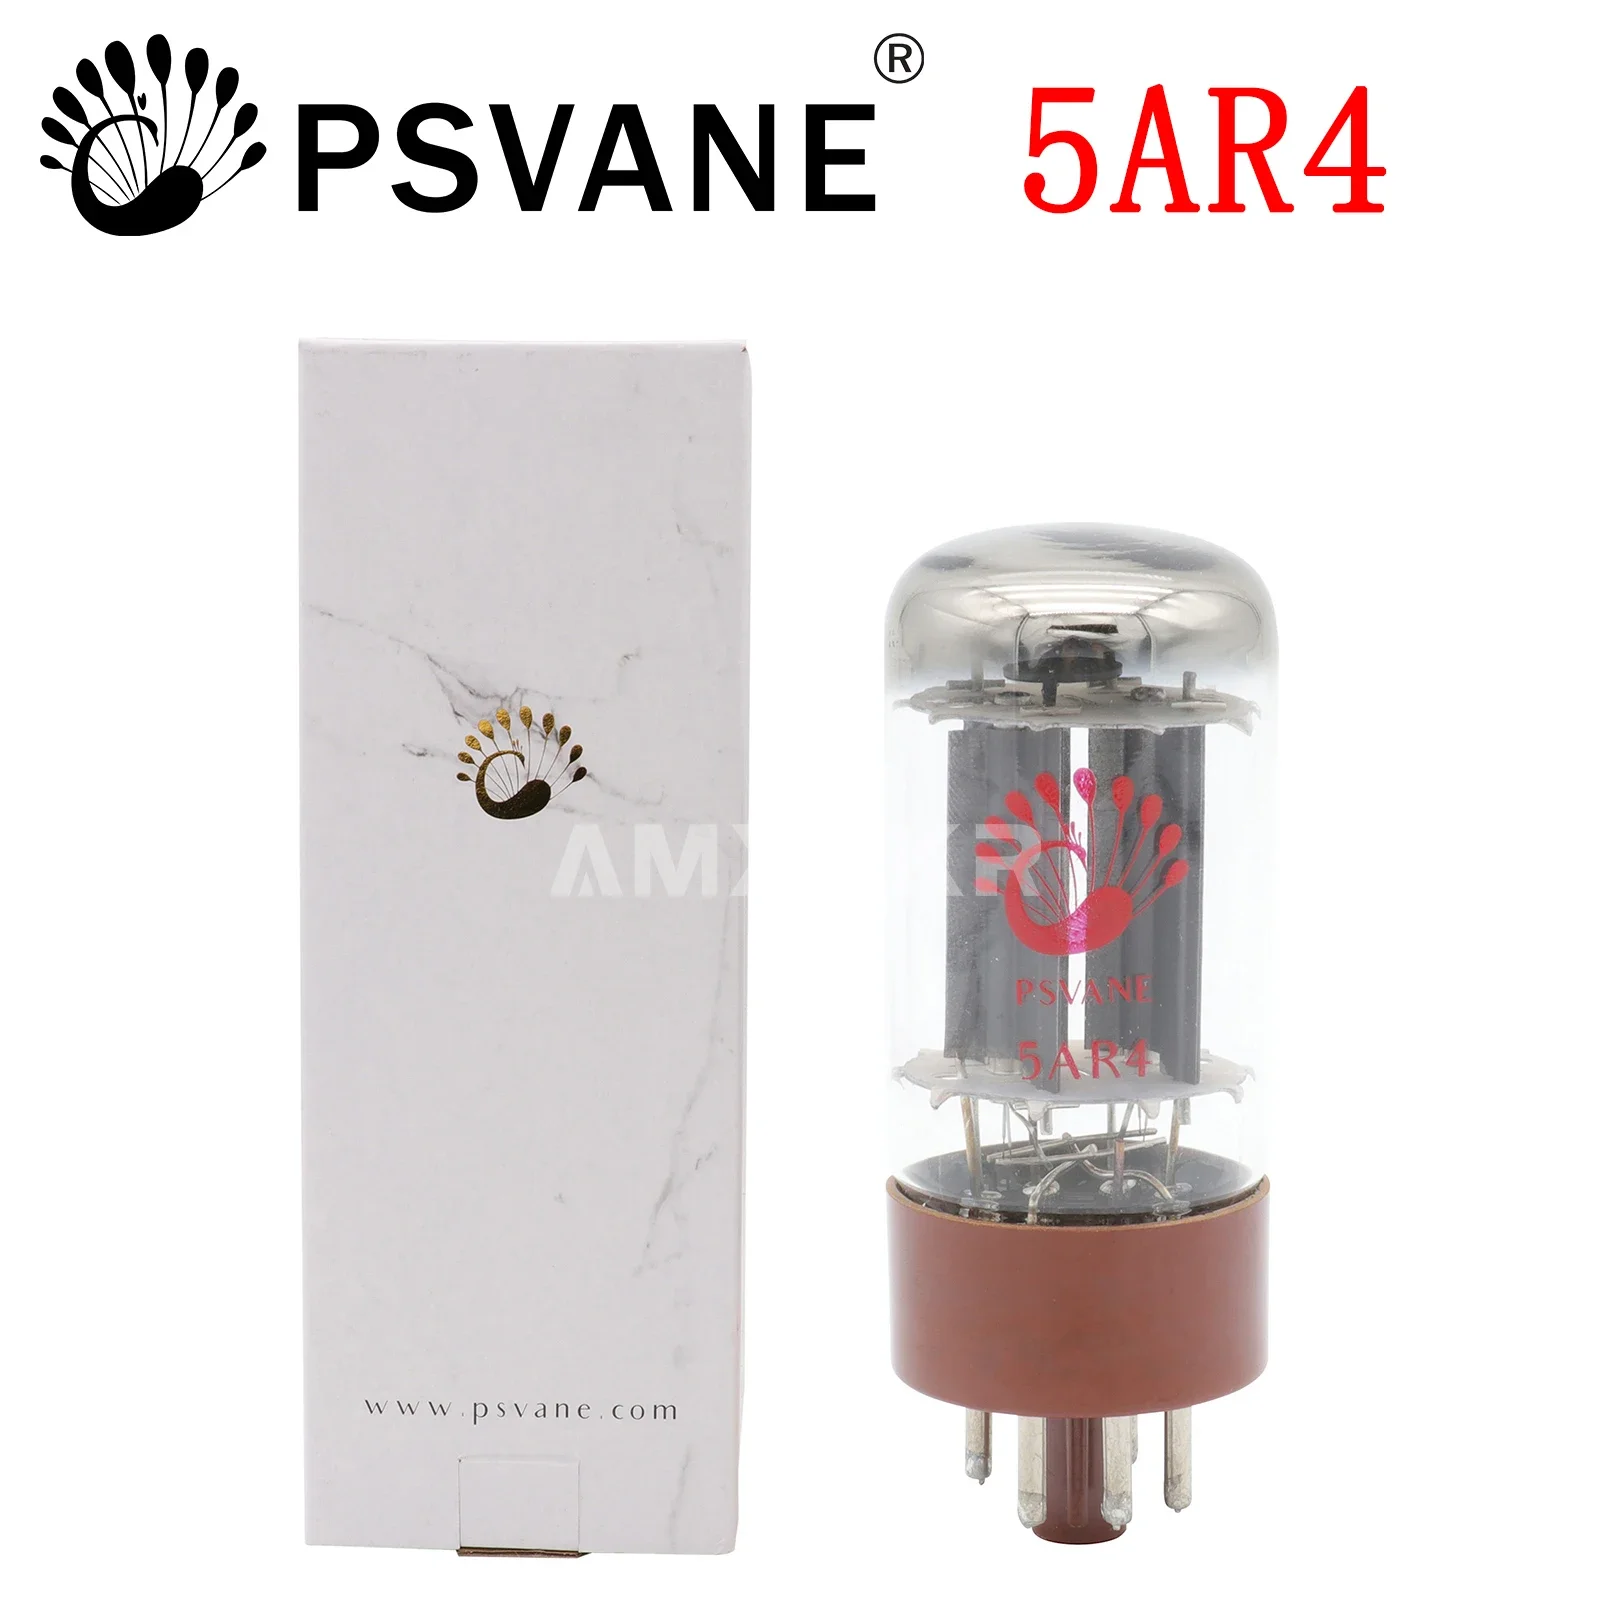 

Трубка PSVANE 5AR4 для вакуумного лампового усилителя заменяет GZ34 5U4G 274B HIFI аудио усилитель оригинальный точный соответствие